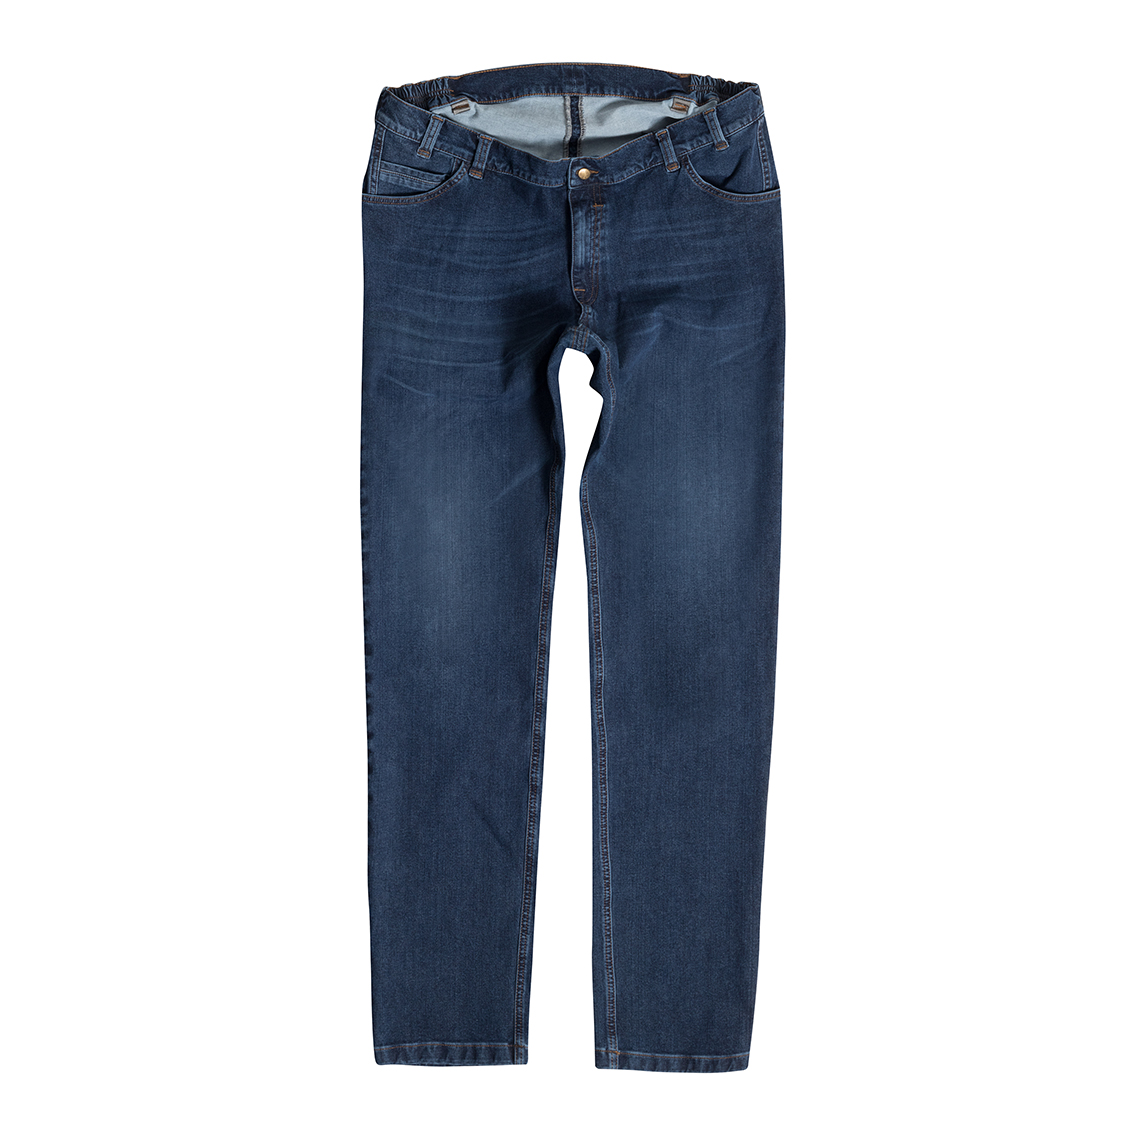 Men's Jeans Bi-Stretch, blue MIKE 10390 61